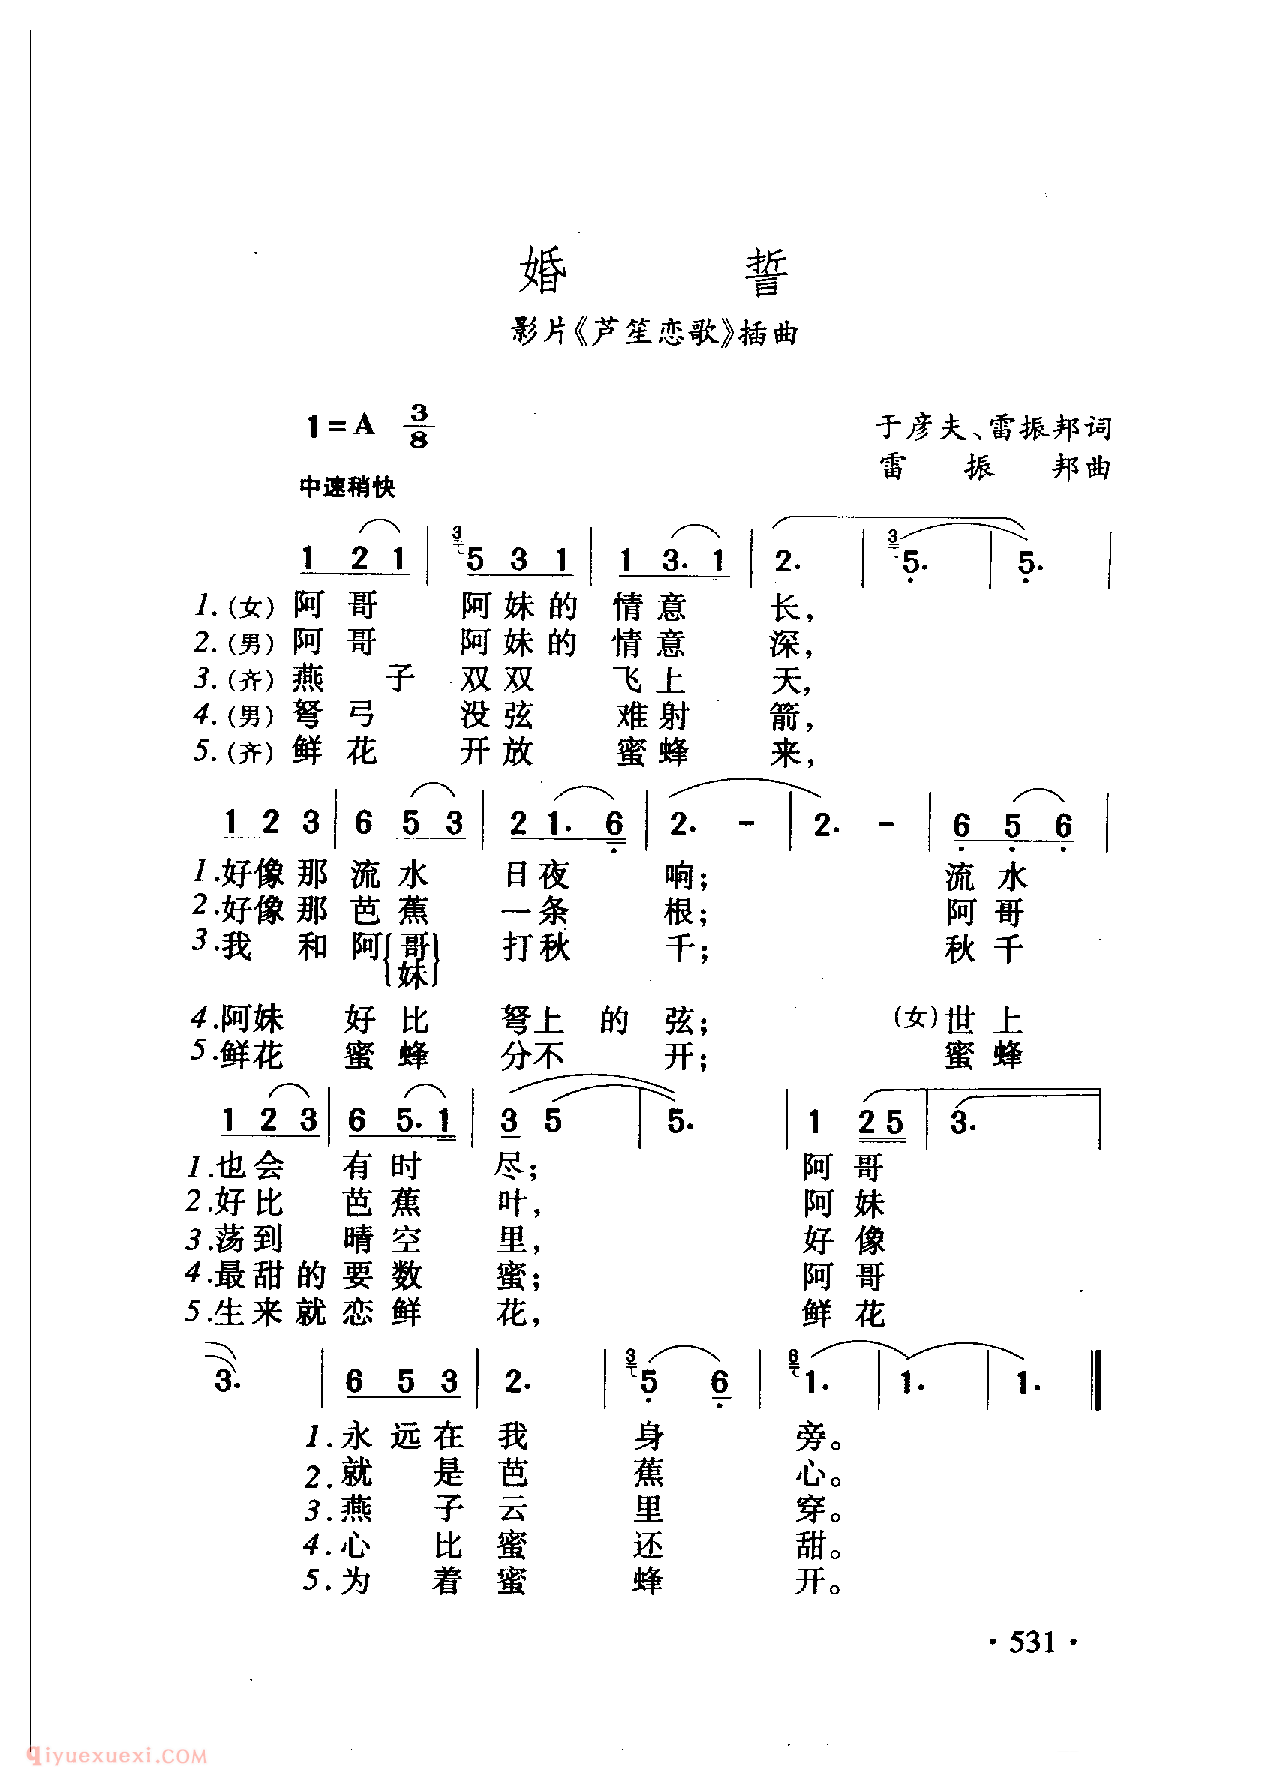 中国名歌[婚誓 影片（芦笙恋歌）插曲]乐谱